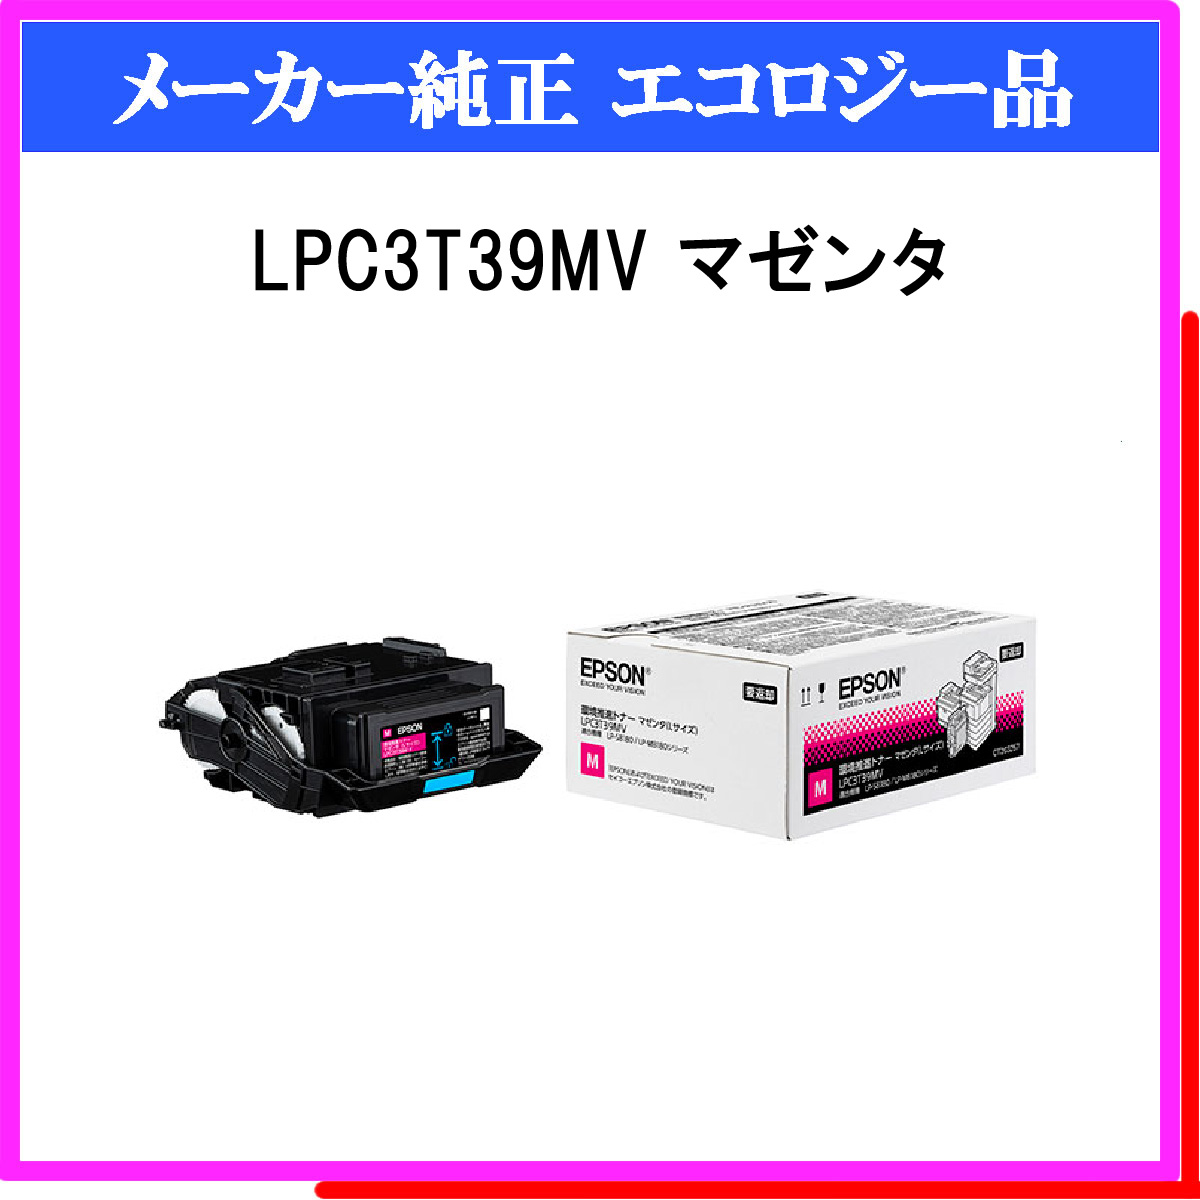 エプソン LPC3T39KV   LPC3T39CV   LPC3T39MV   LPC3T39YV 環境推進トナー Lサイズ 4色のはトナーカートリッジです。 エプソン LPC3T39KV   LPC3T39CV   LPC3T39 - 3